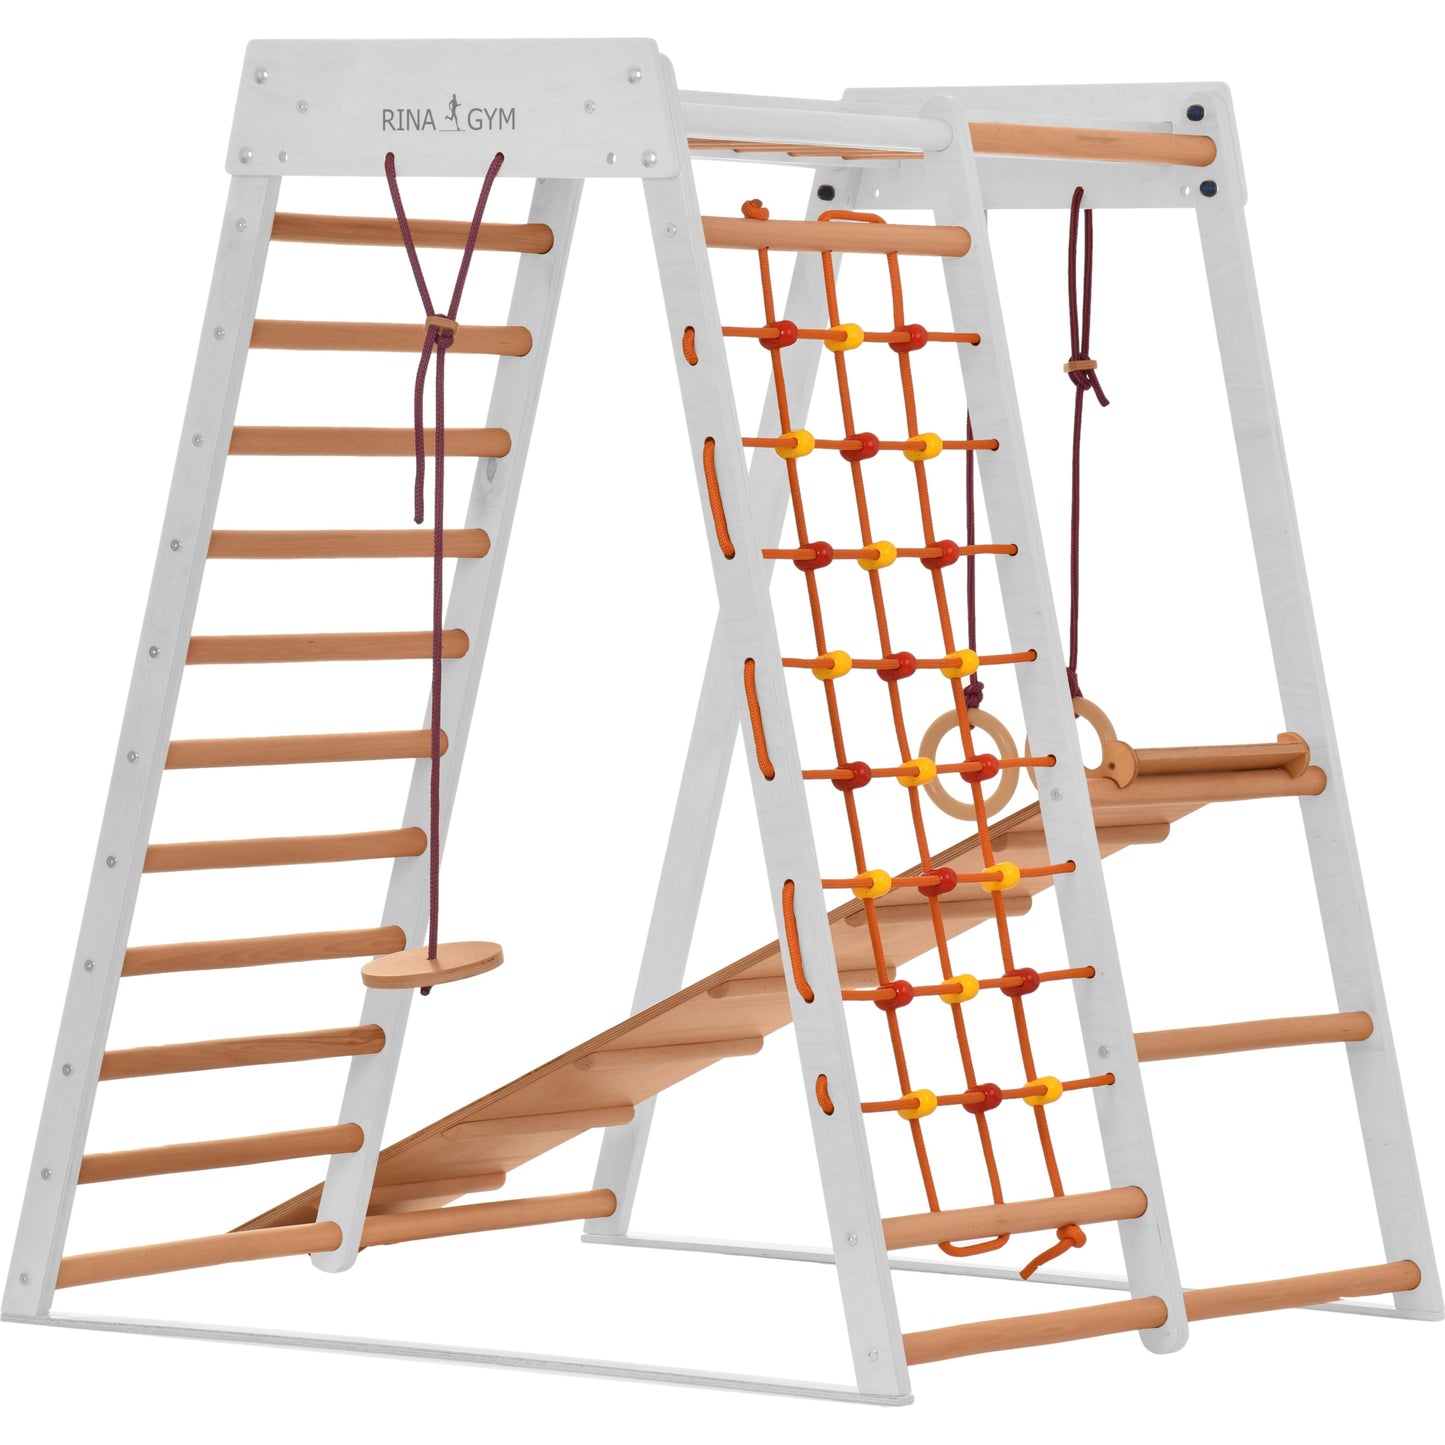 RINAGYM Indoor Spielplatz aus Holz für Kinder - holz klettergerüst indoor ab 3 jahre - Indoor Klettergerüst Kinder kidwood (Classic weiß)